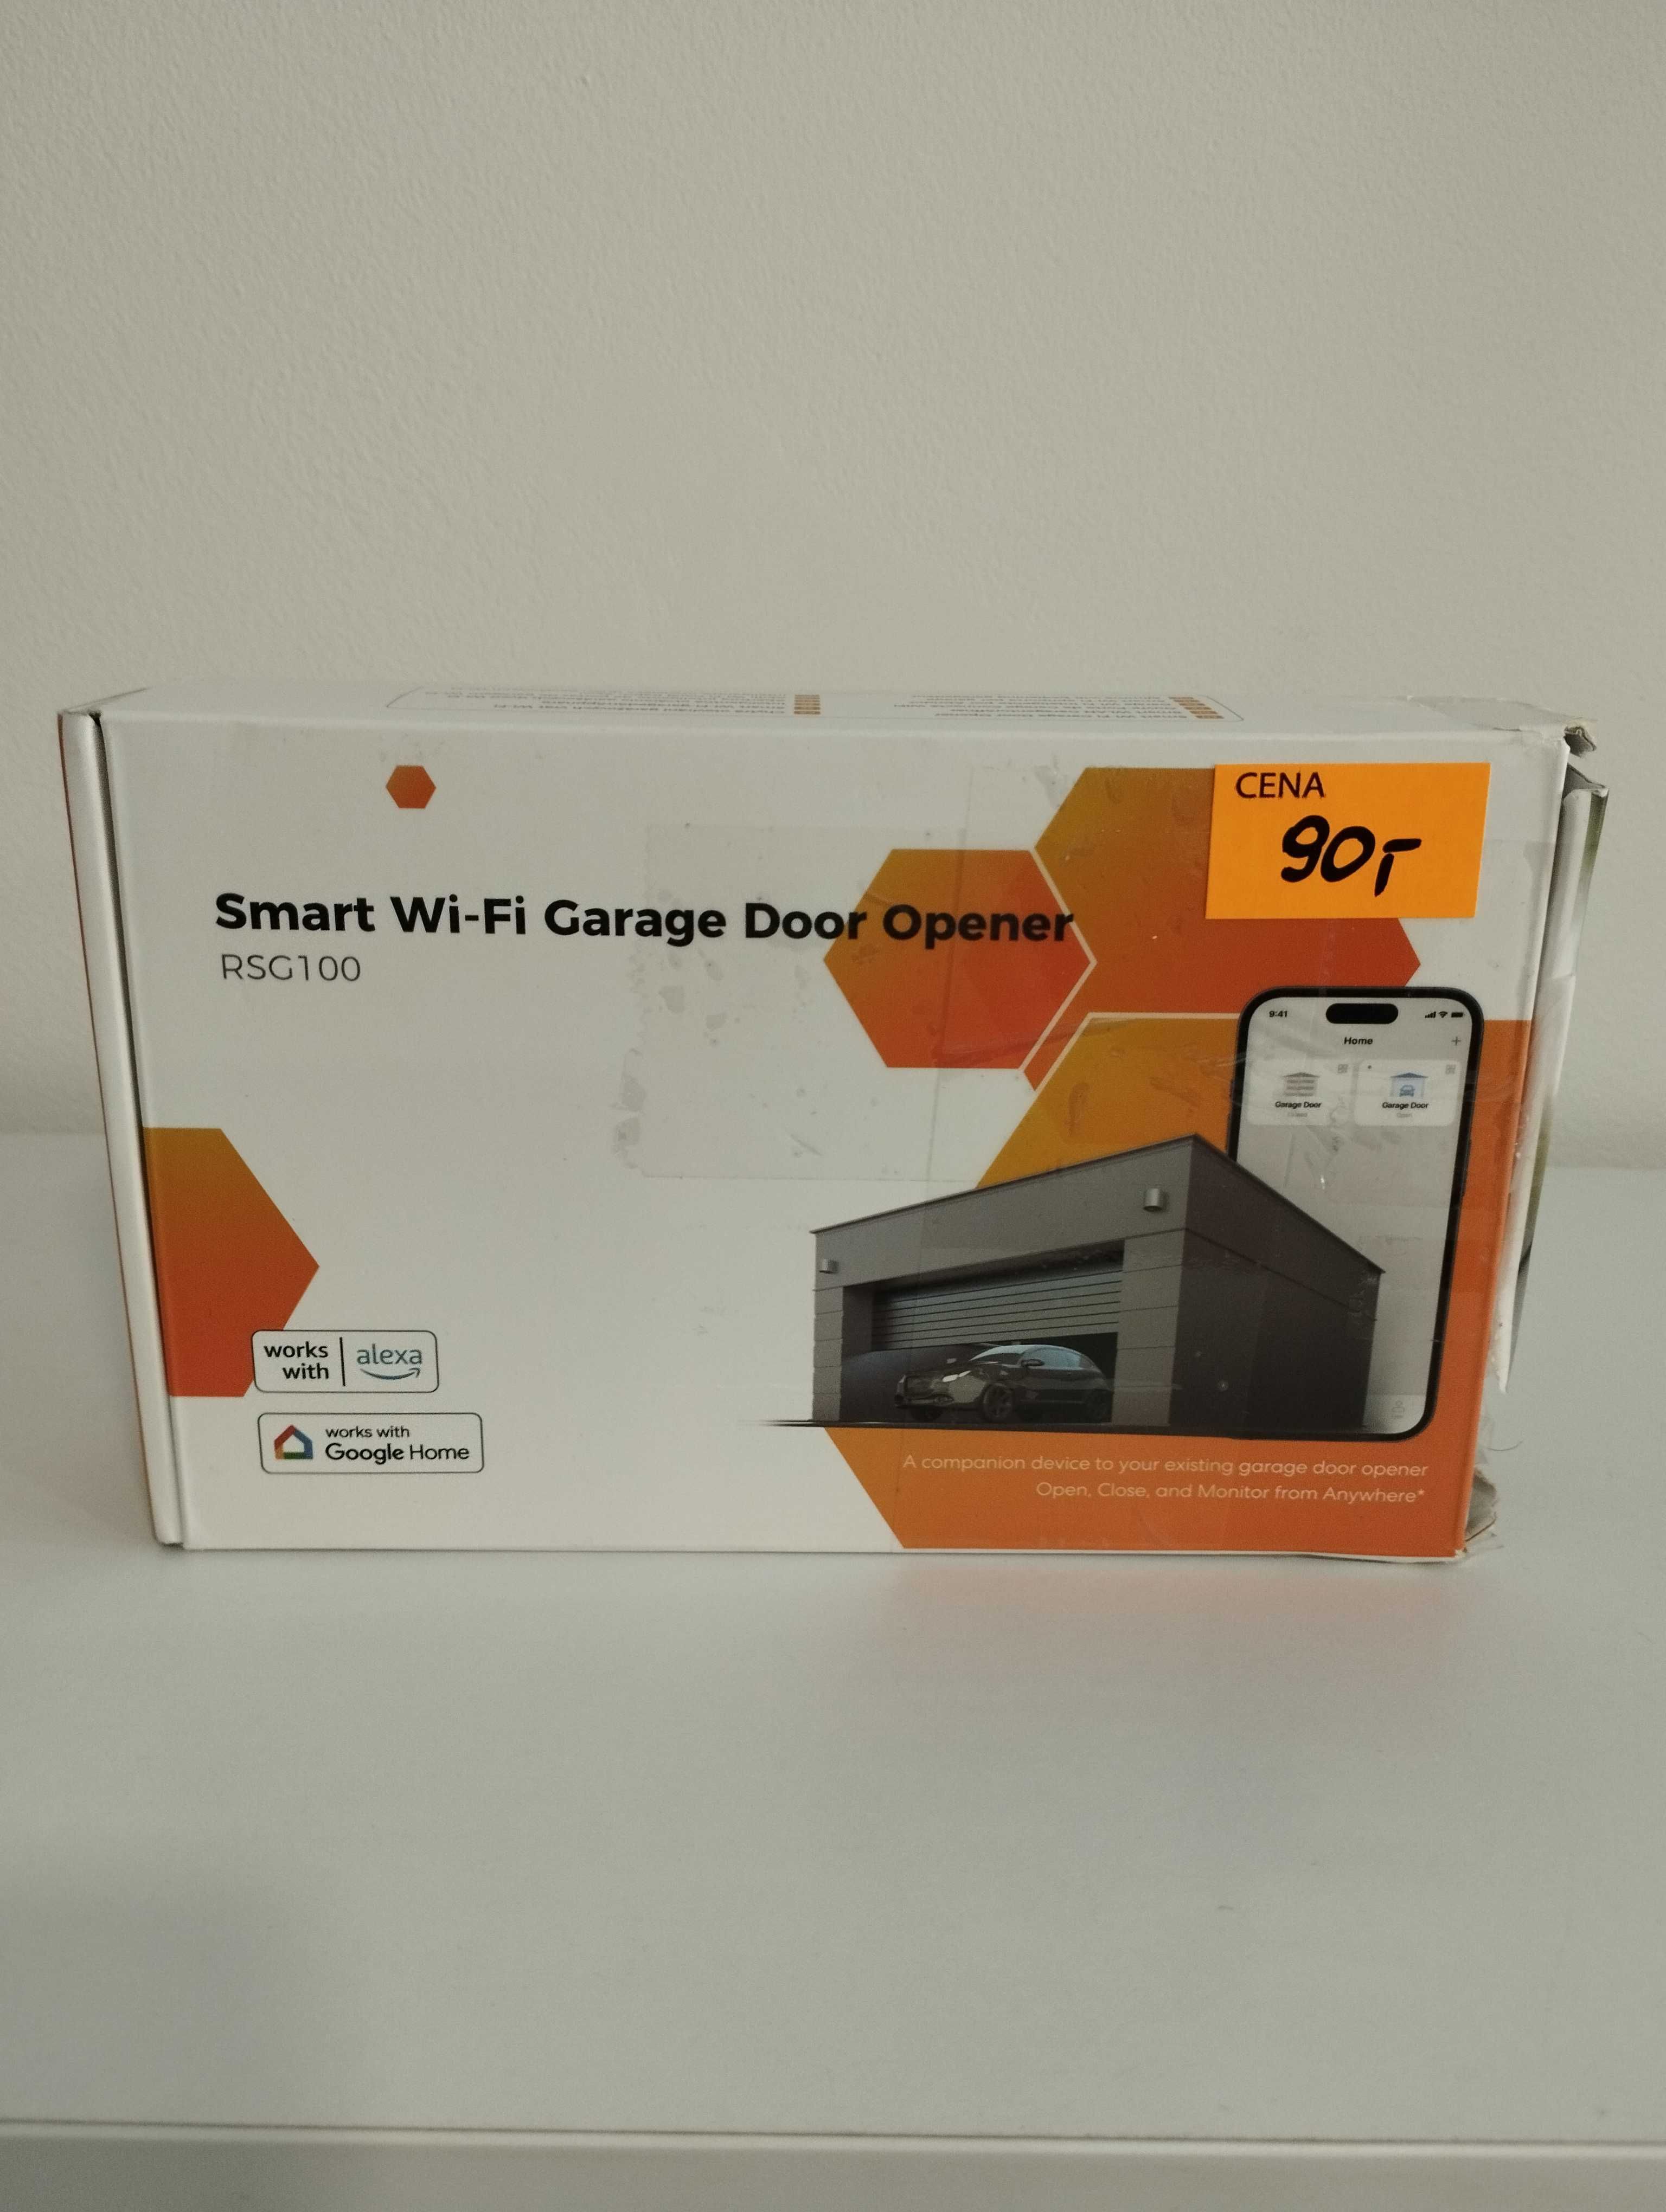 Smart Wi-Fi Garage Door Opener RSG100